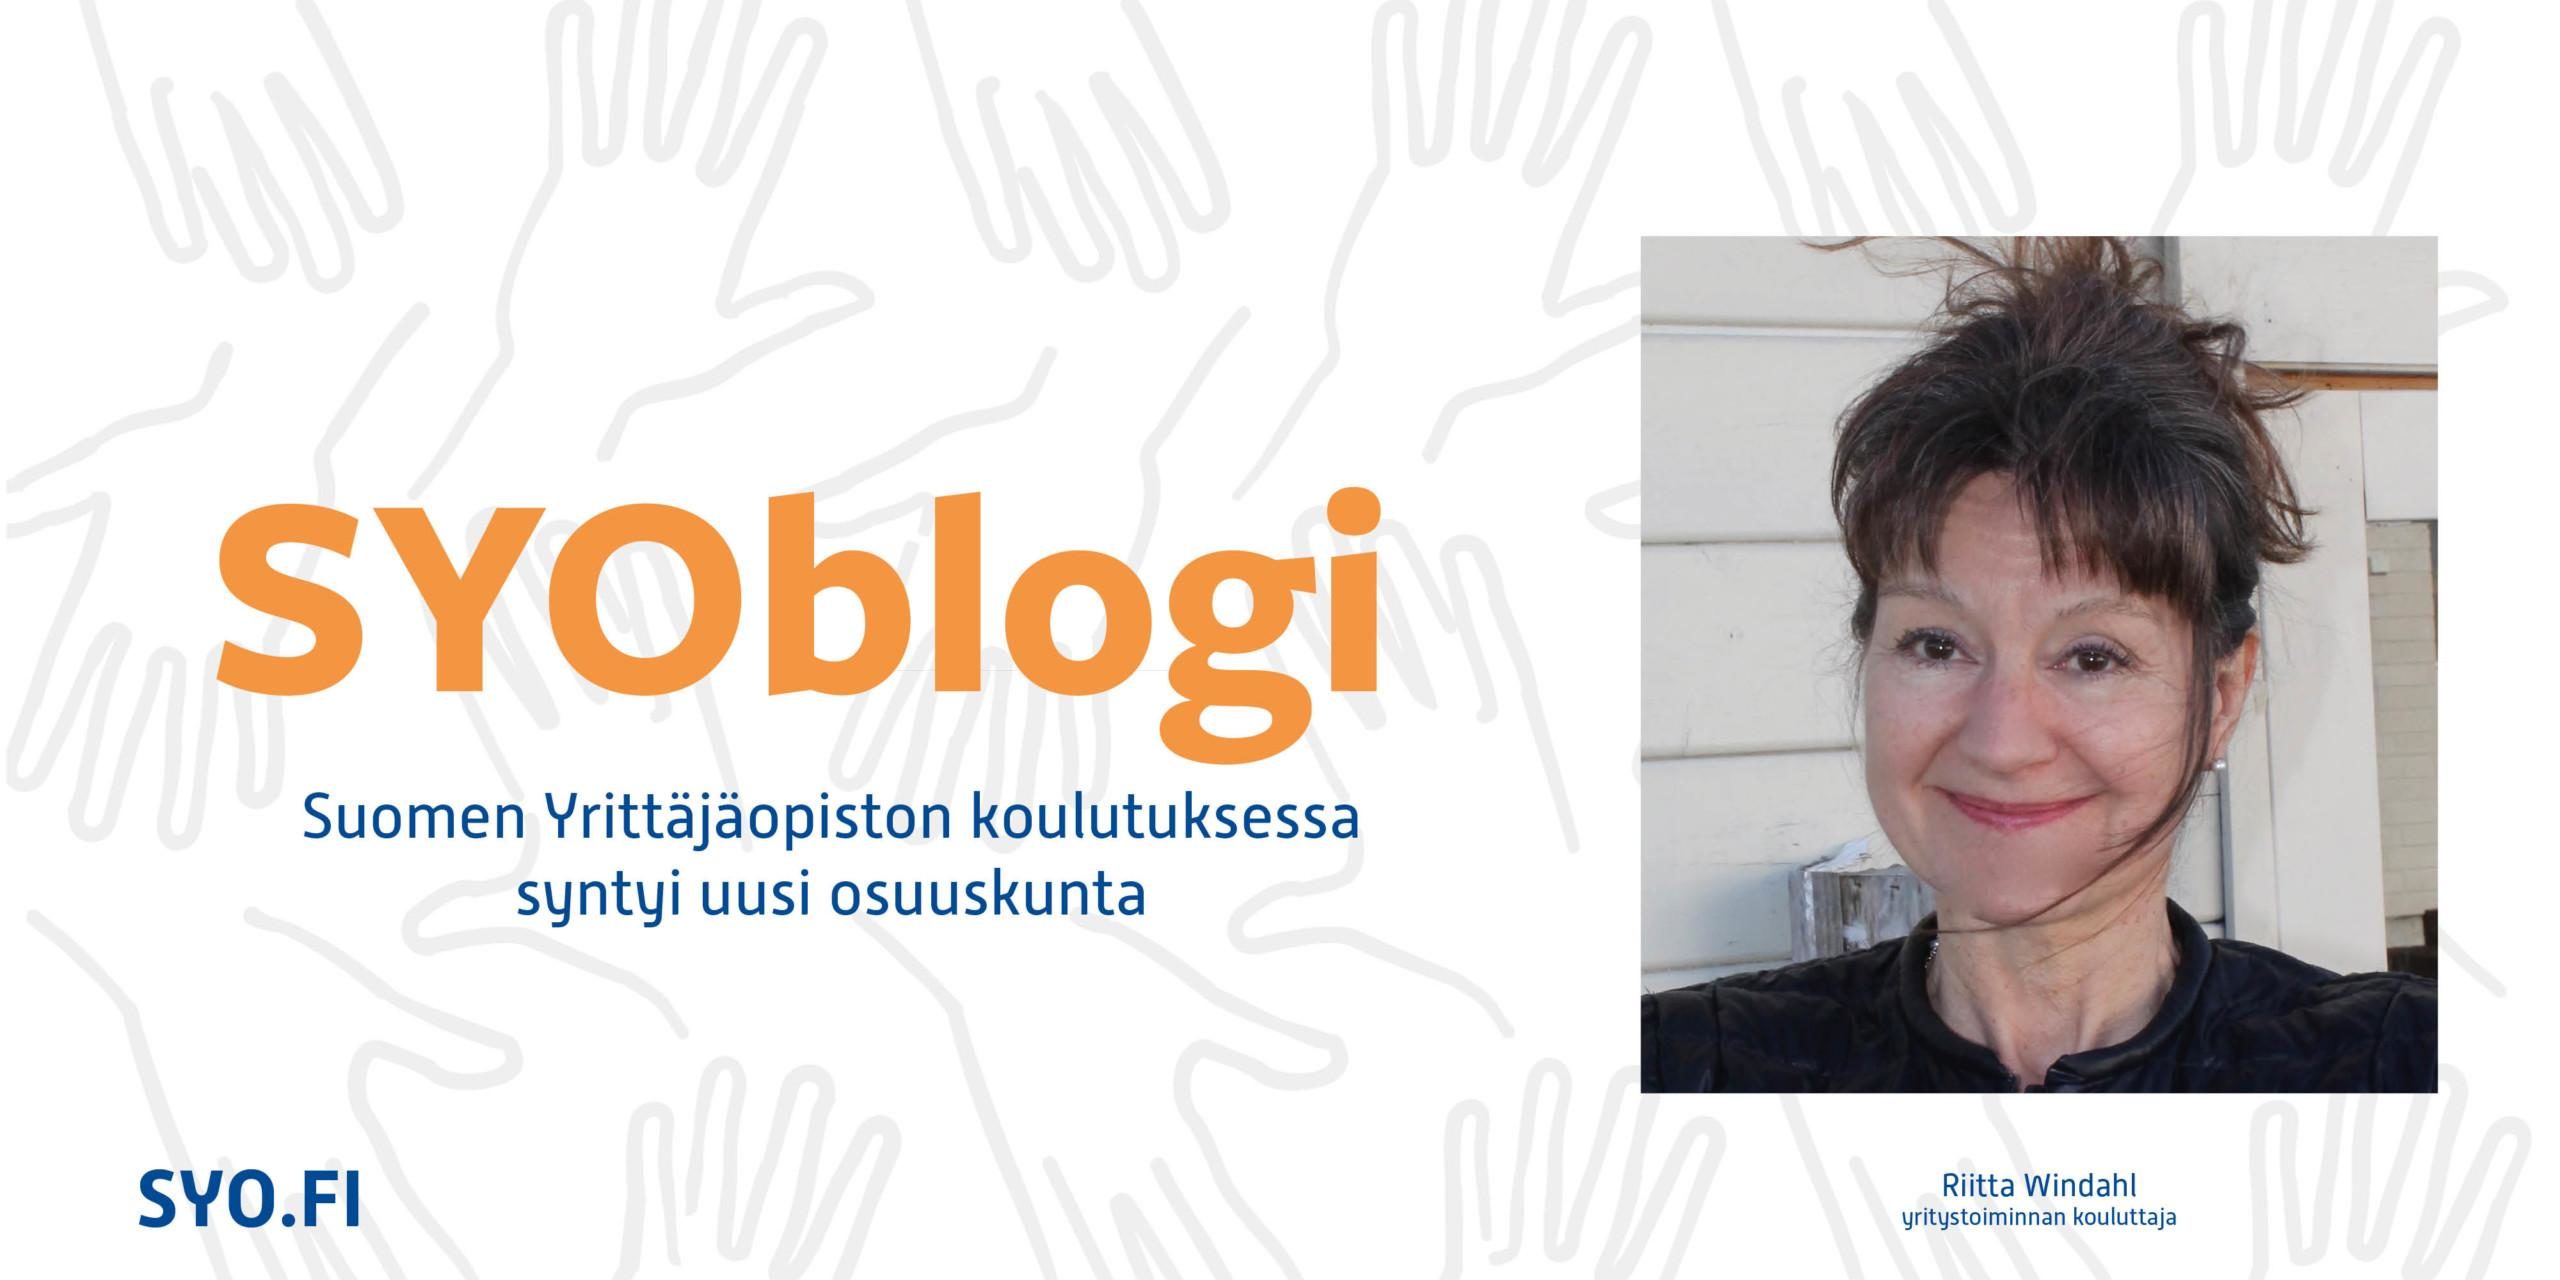 SYOblogi, Suomen Yrittäjäopiston koulutuksessa syntyi uusi osuuskunta, Riitta Windahl.